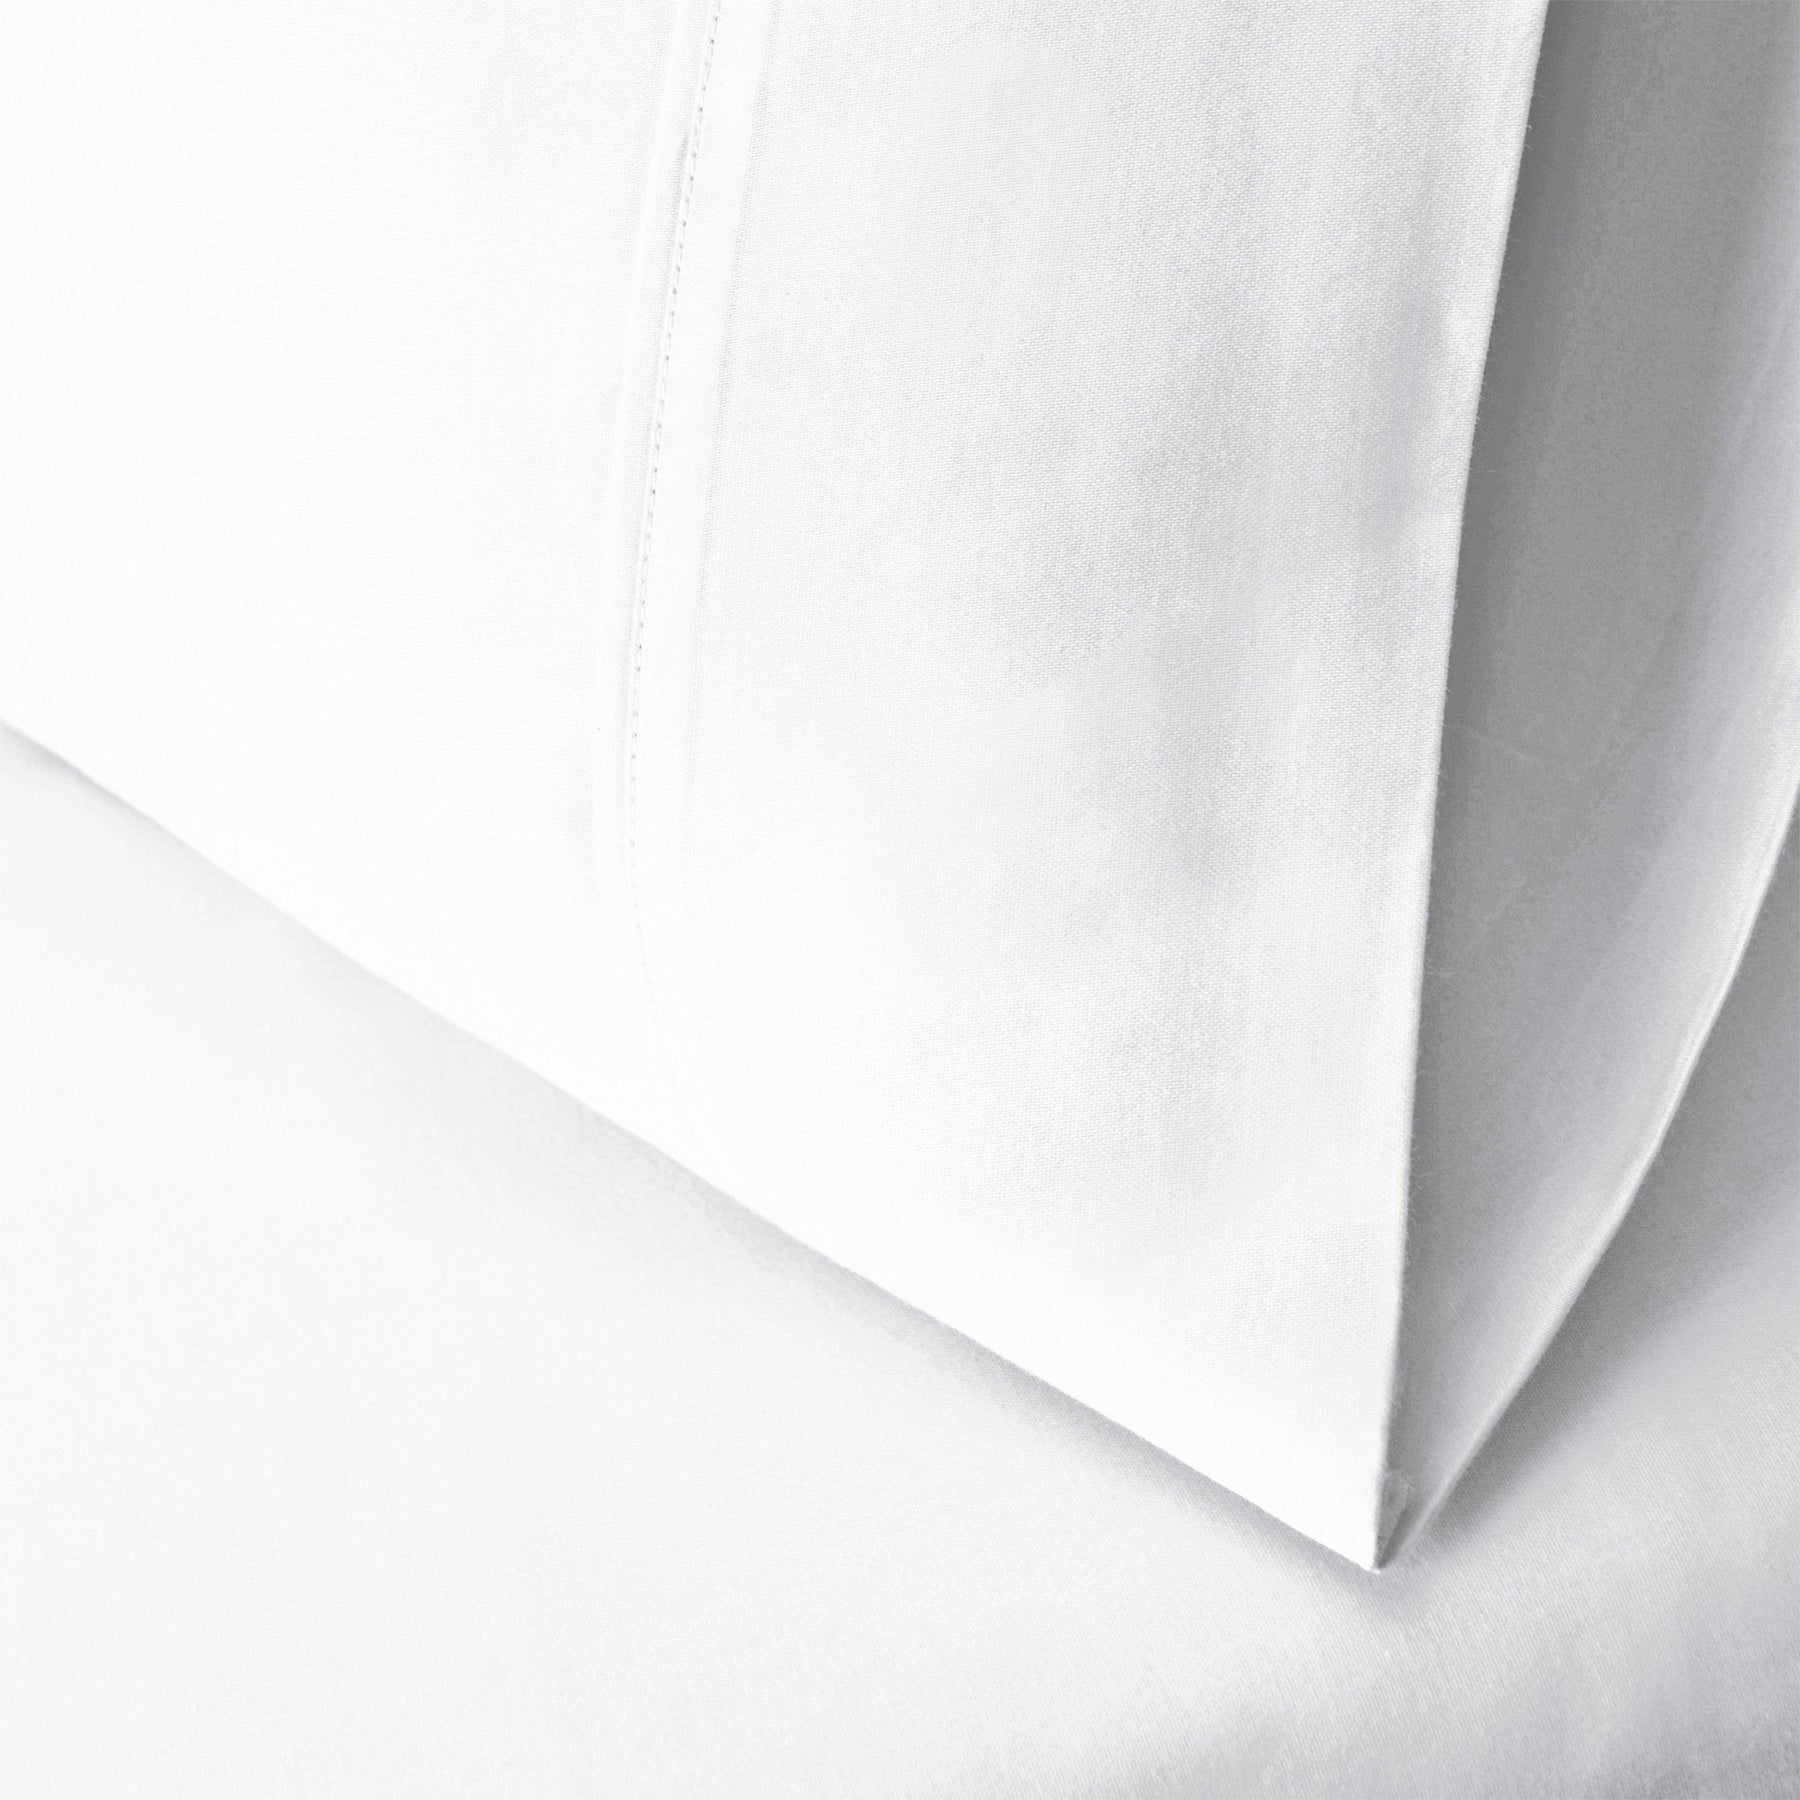  Wrinkle Resistant Egyptian Cotton 2-Piece Pillowcase Set -  White